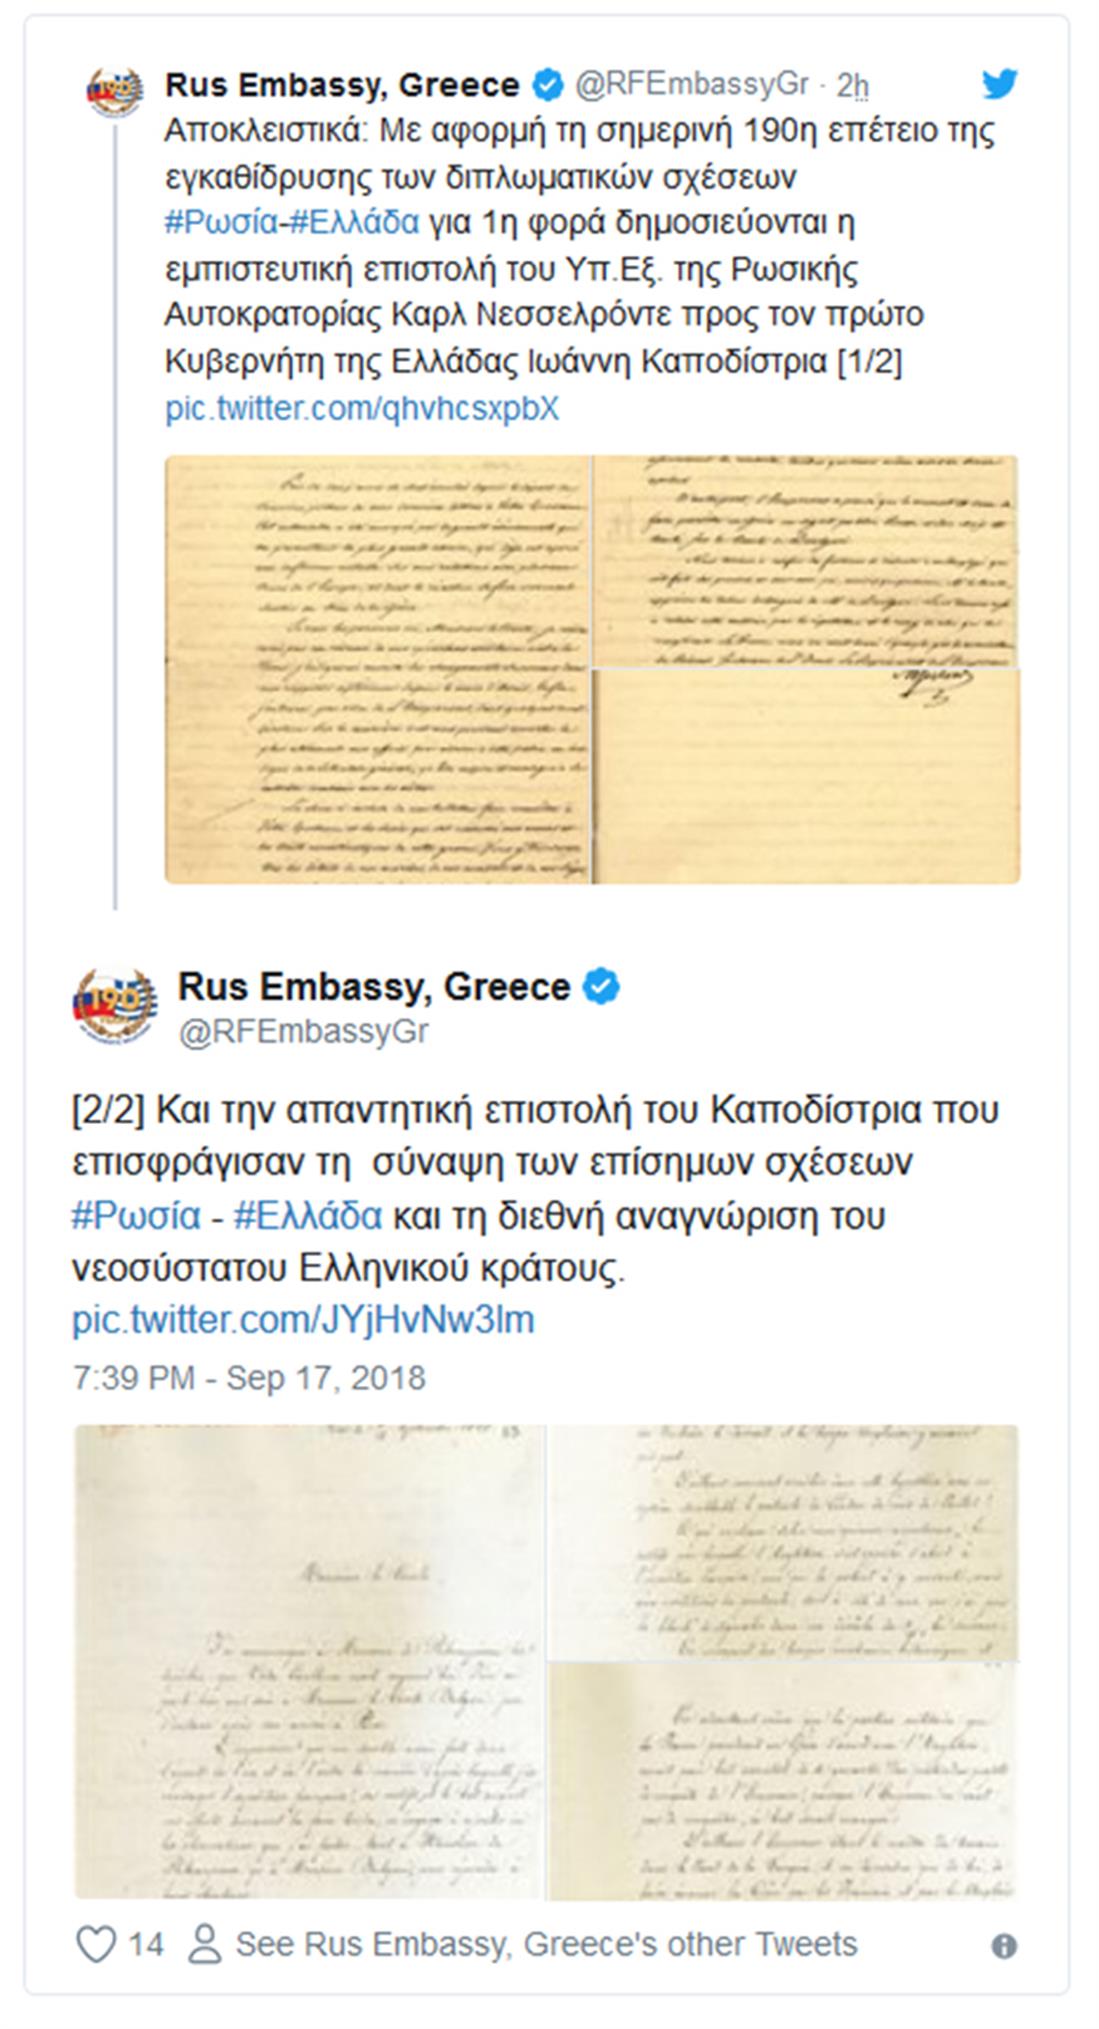 Ρωσική πρεσβεία - επιστολές - ΥΠΕΞ της Ρωσικής Αυτοκρατορίας - Καρλ Νεσσελρόντε - Καποδίστριας